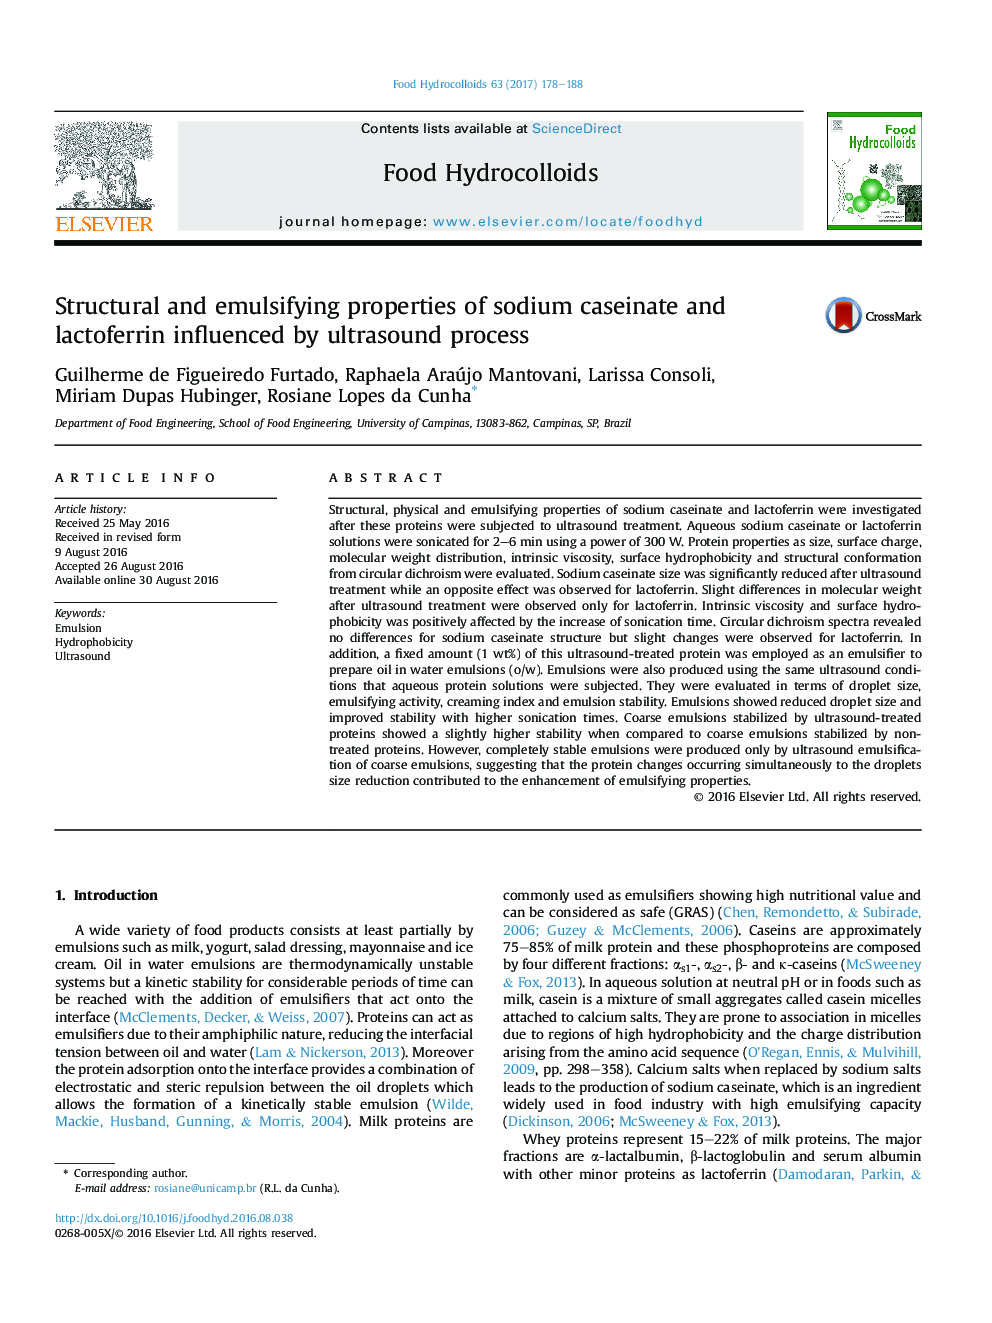 ویژگی های ساختاری و امولسیون سدیم کائازینات و لاکتوفرین تحت تاثیر فرآیند اولتراسوند قرار دارند 